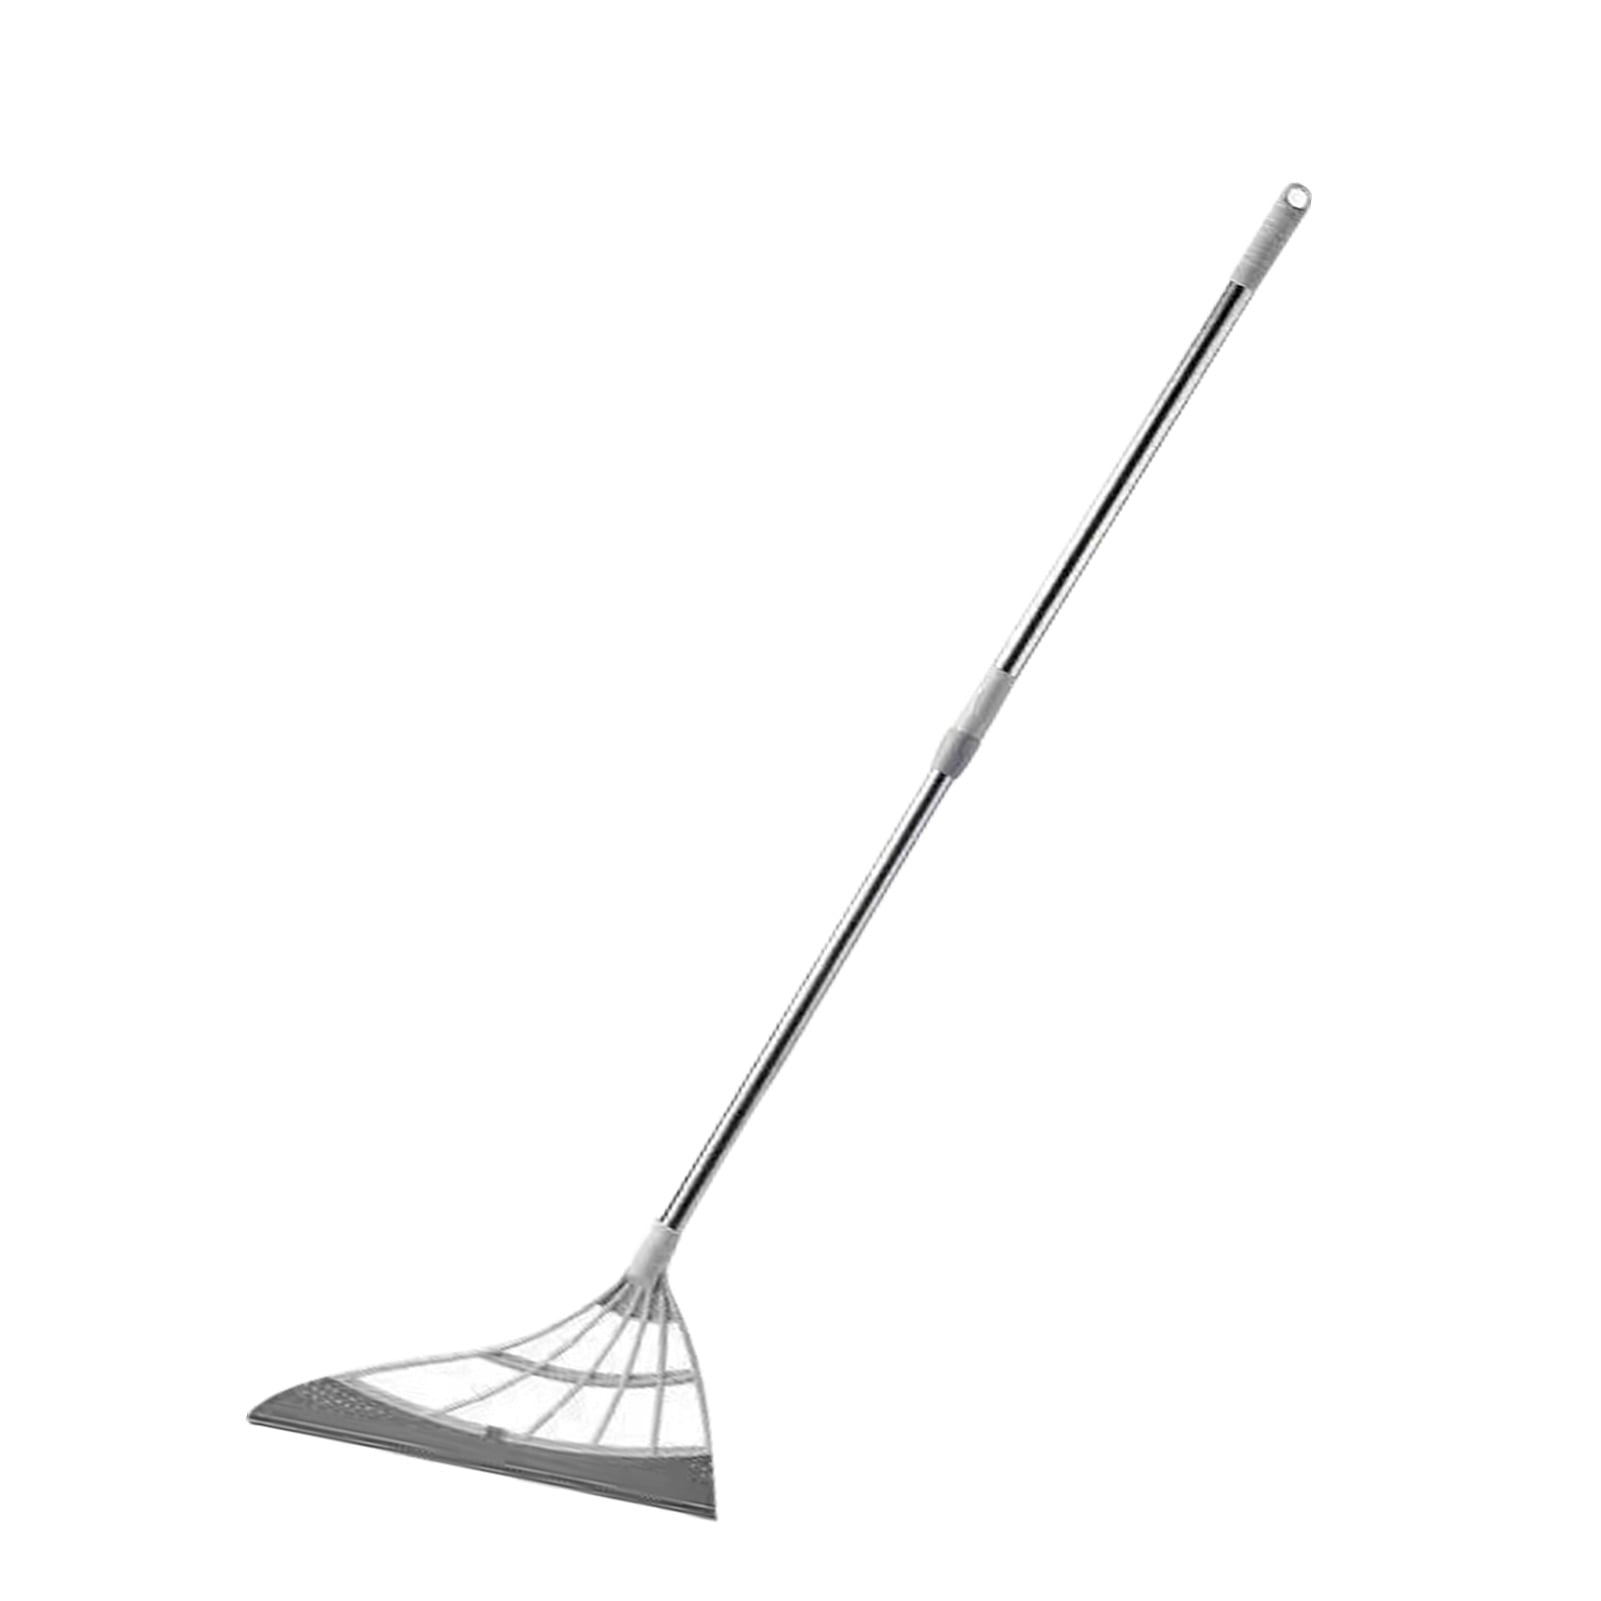 7429円 【国内発送】 MTB Portable Snow Shovel for Car Pack of 2 Sets Black 41.3-in Long with